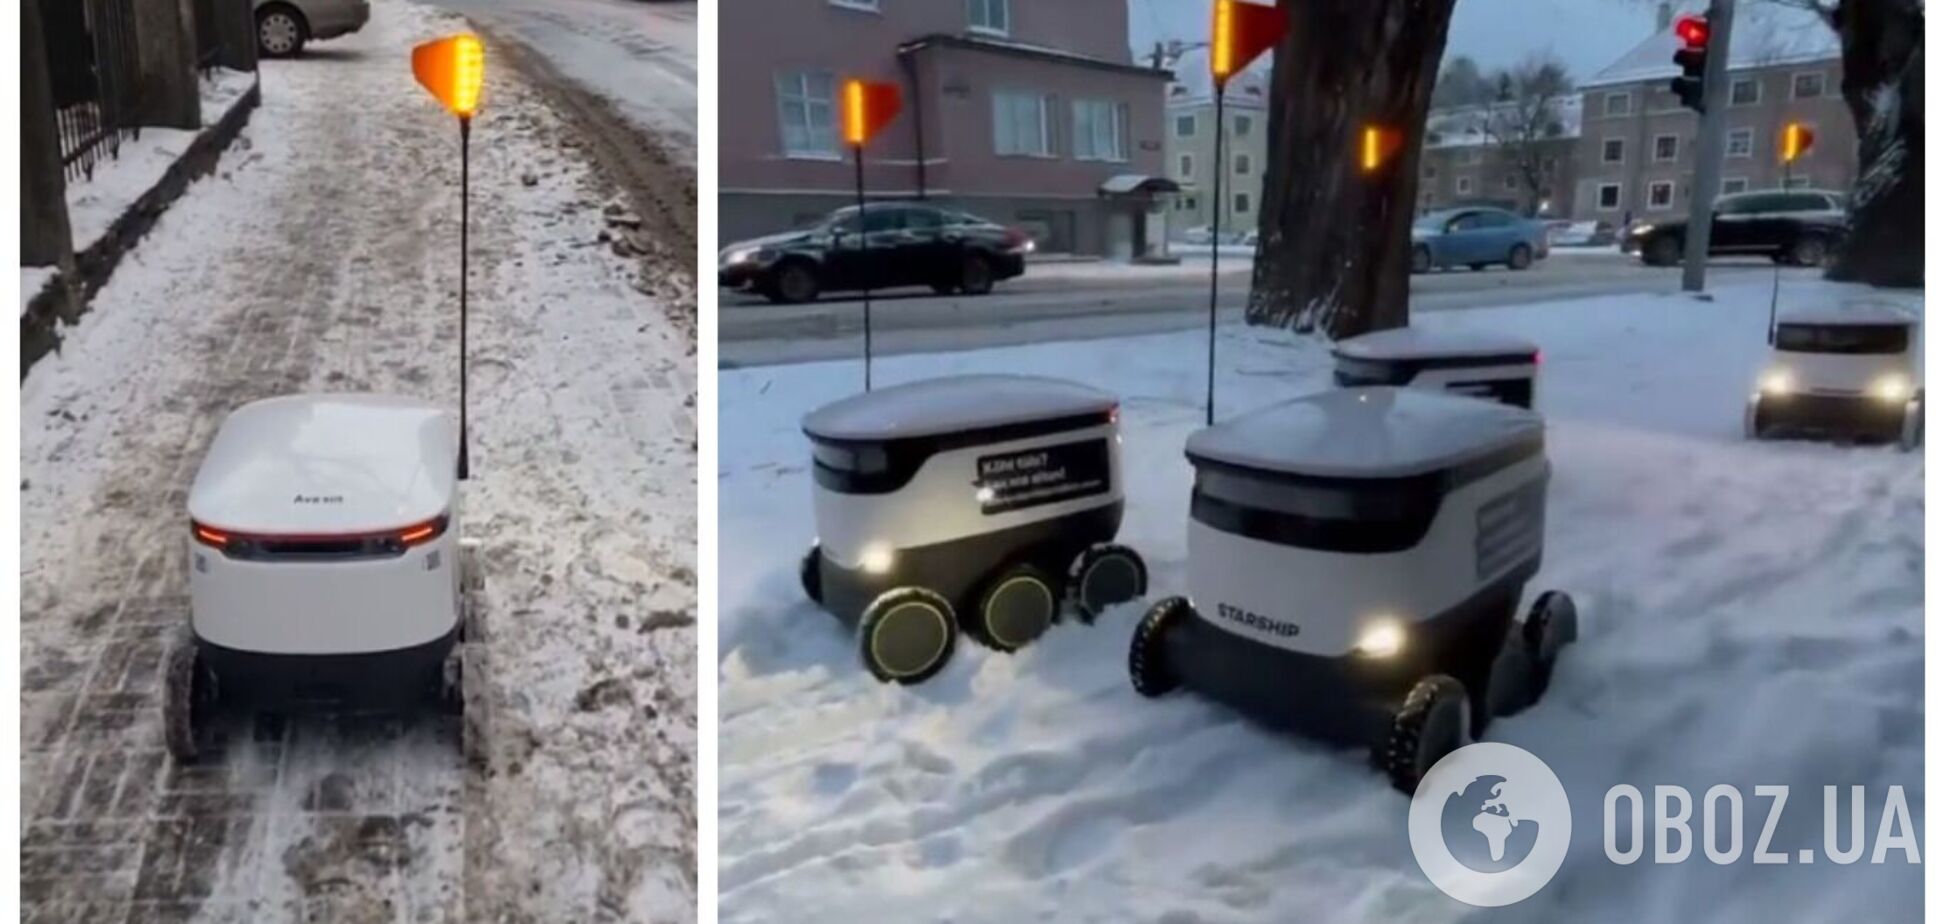 У Таллінні роботи-кур'єри застрягли у снігових заметах: двірники не розчистили тротуар. Відео